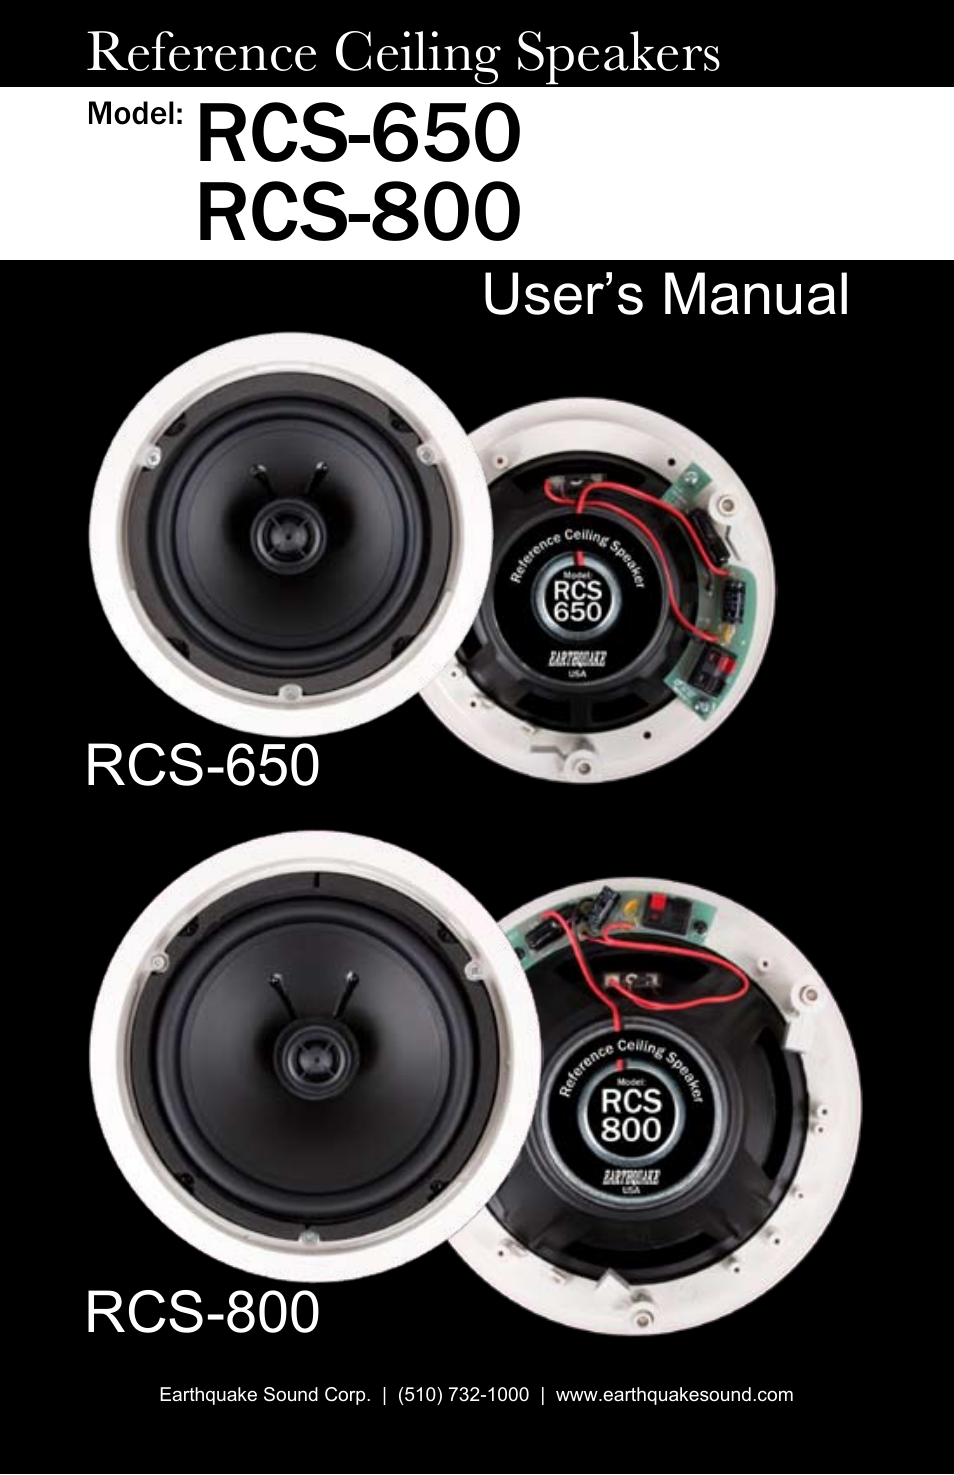 RCS-800